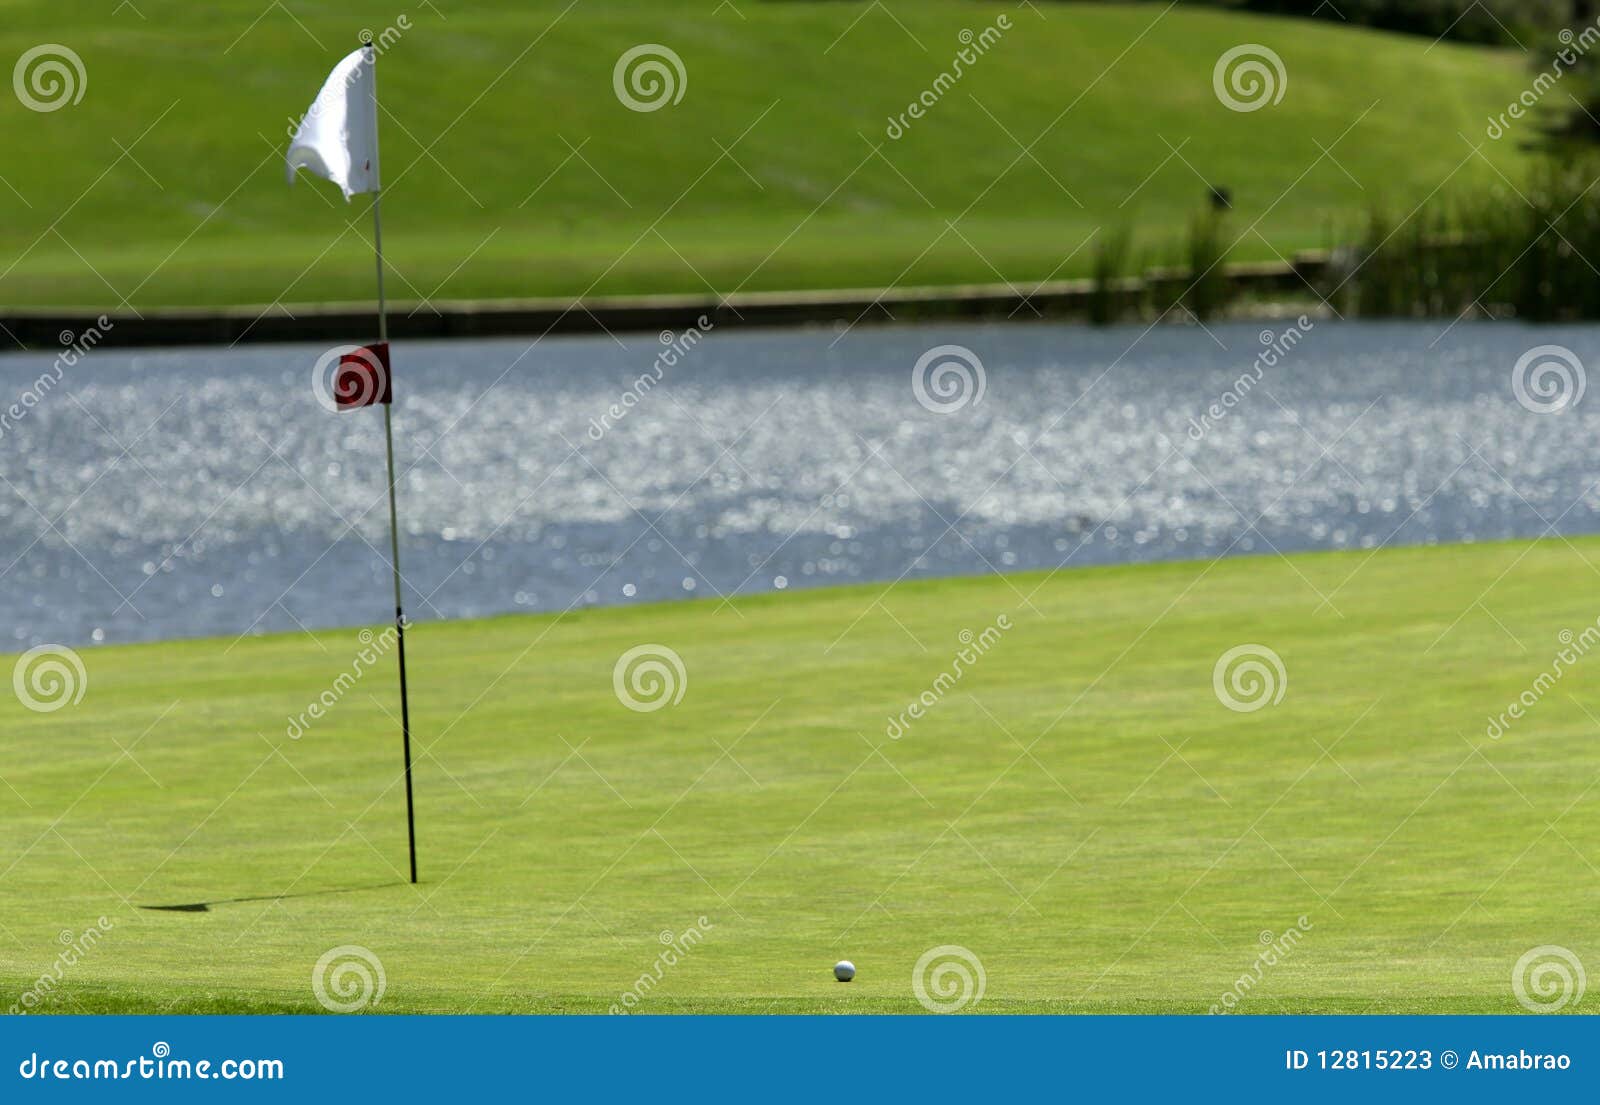 A ball near the hole on a golf course